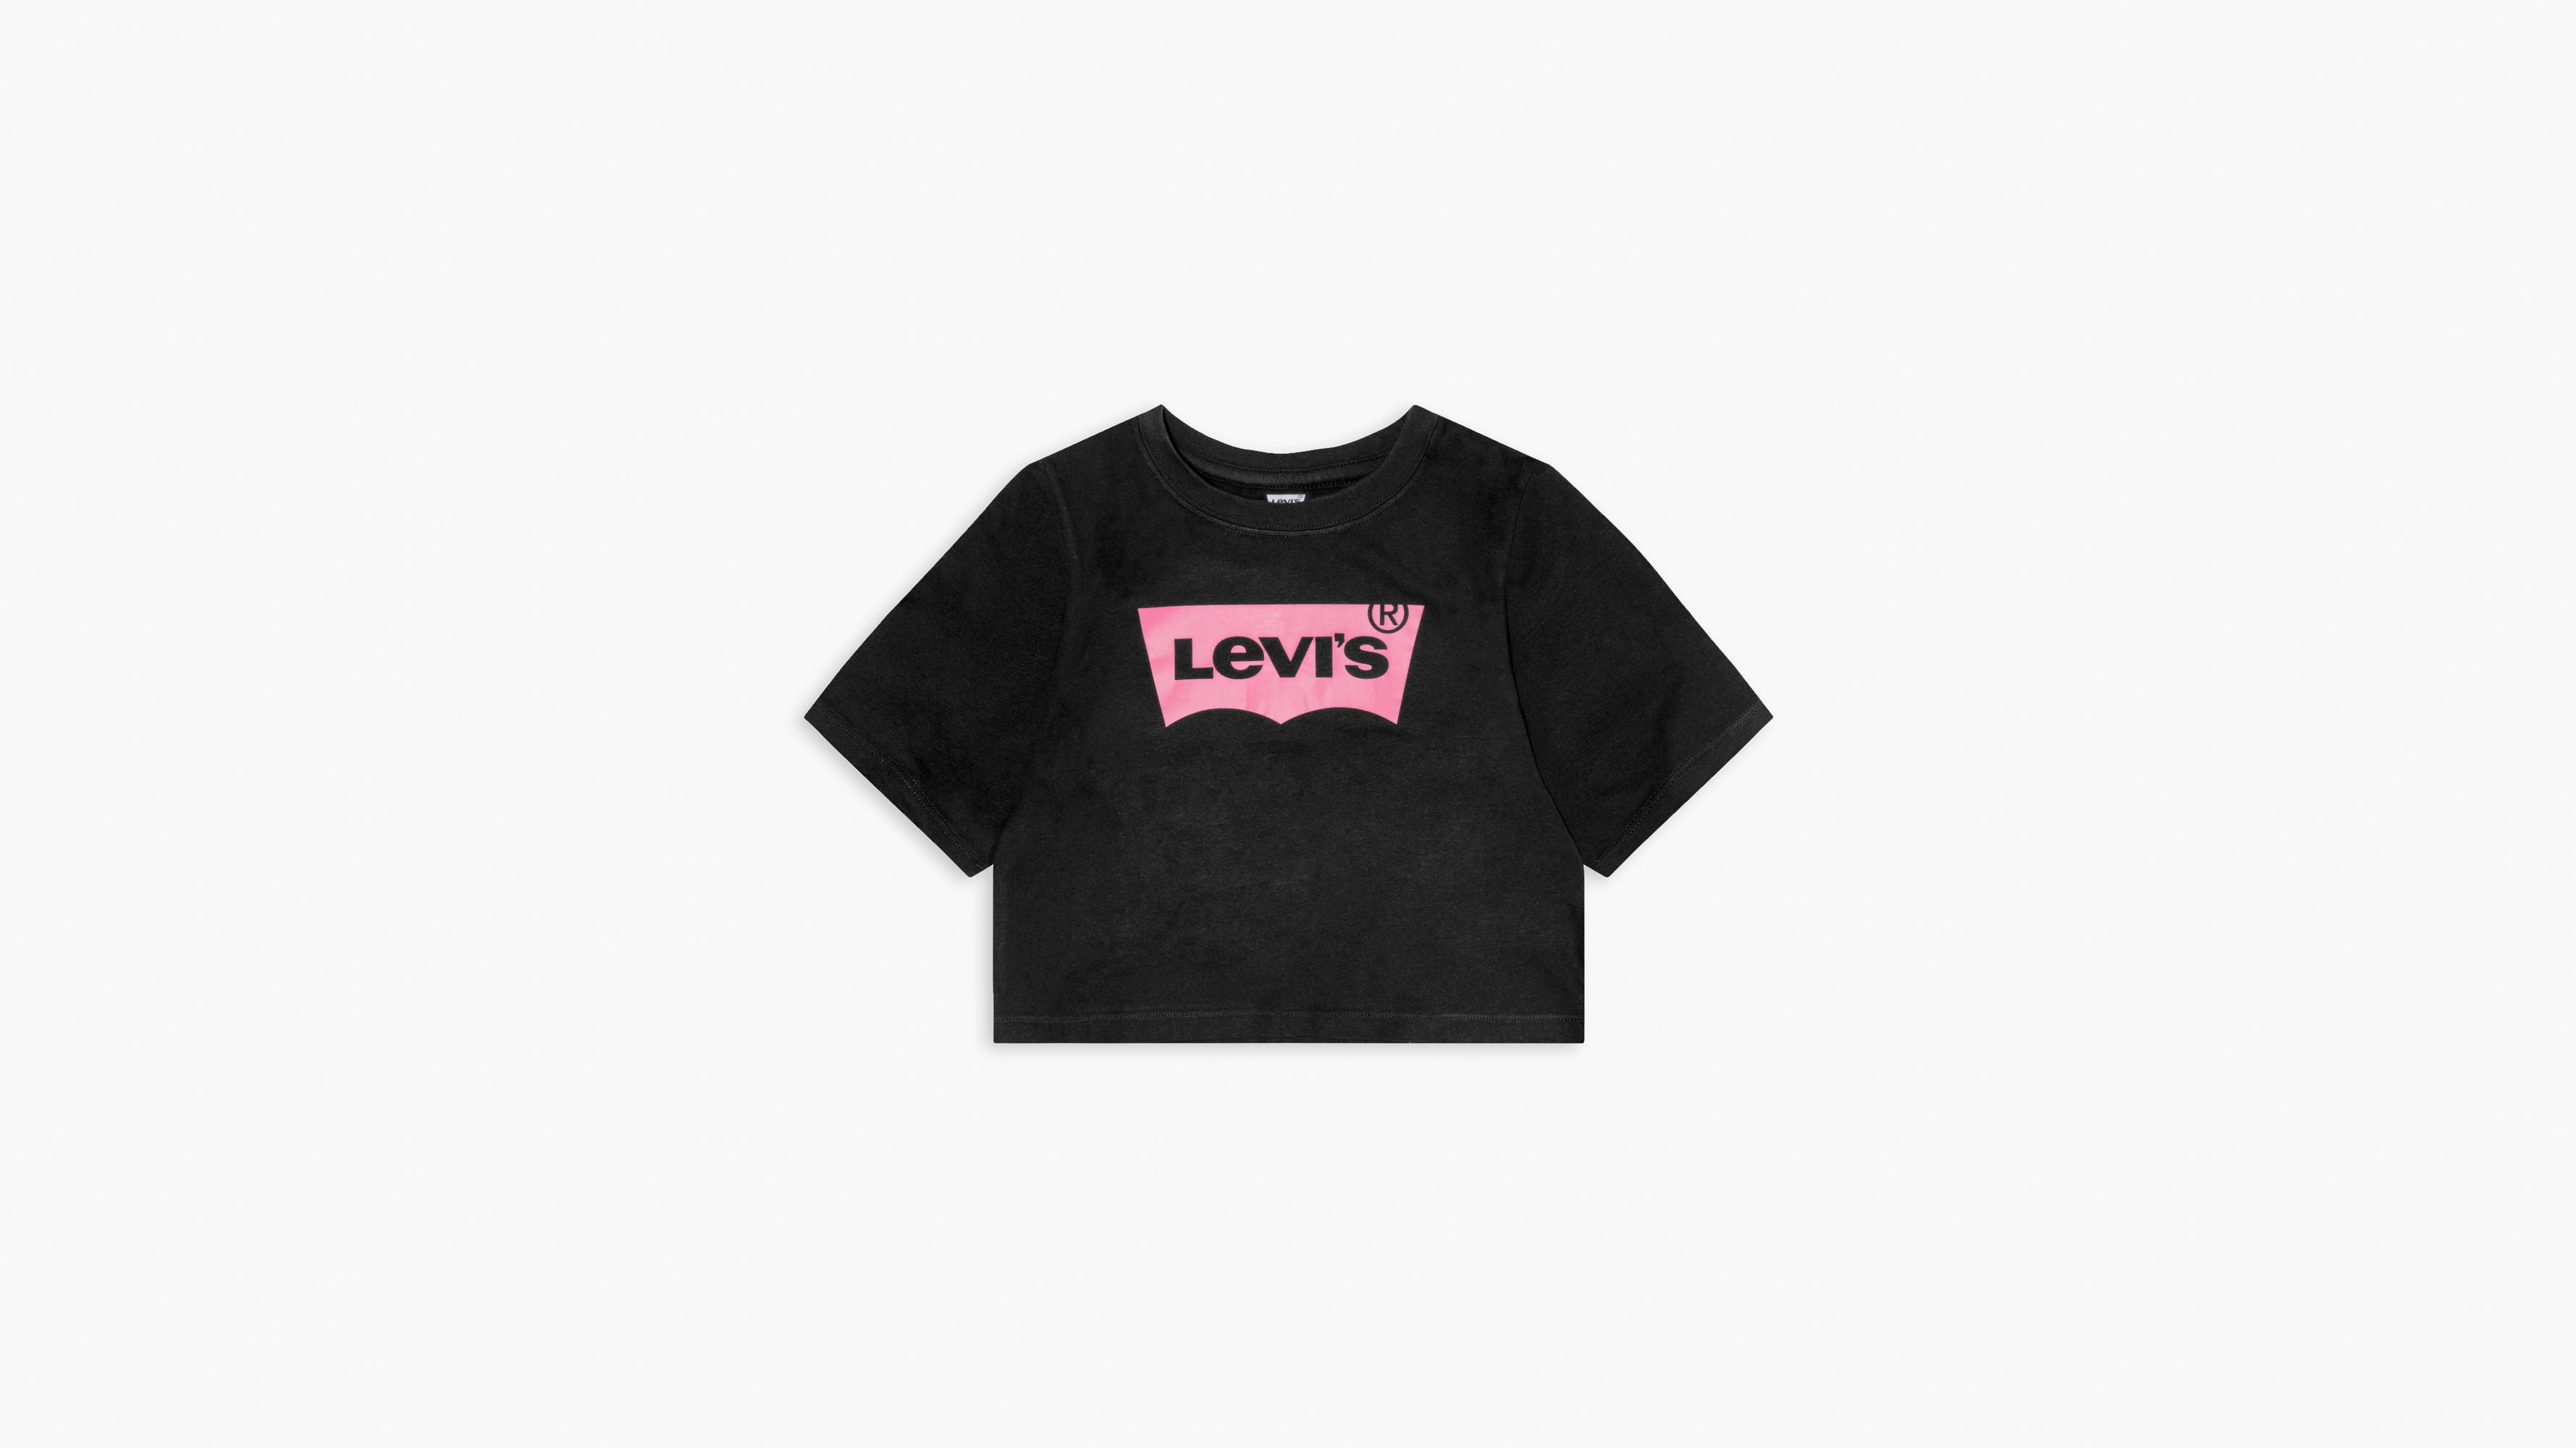 levis crop shirt